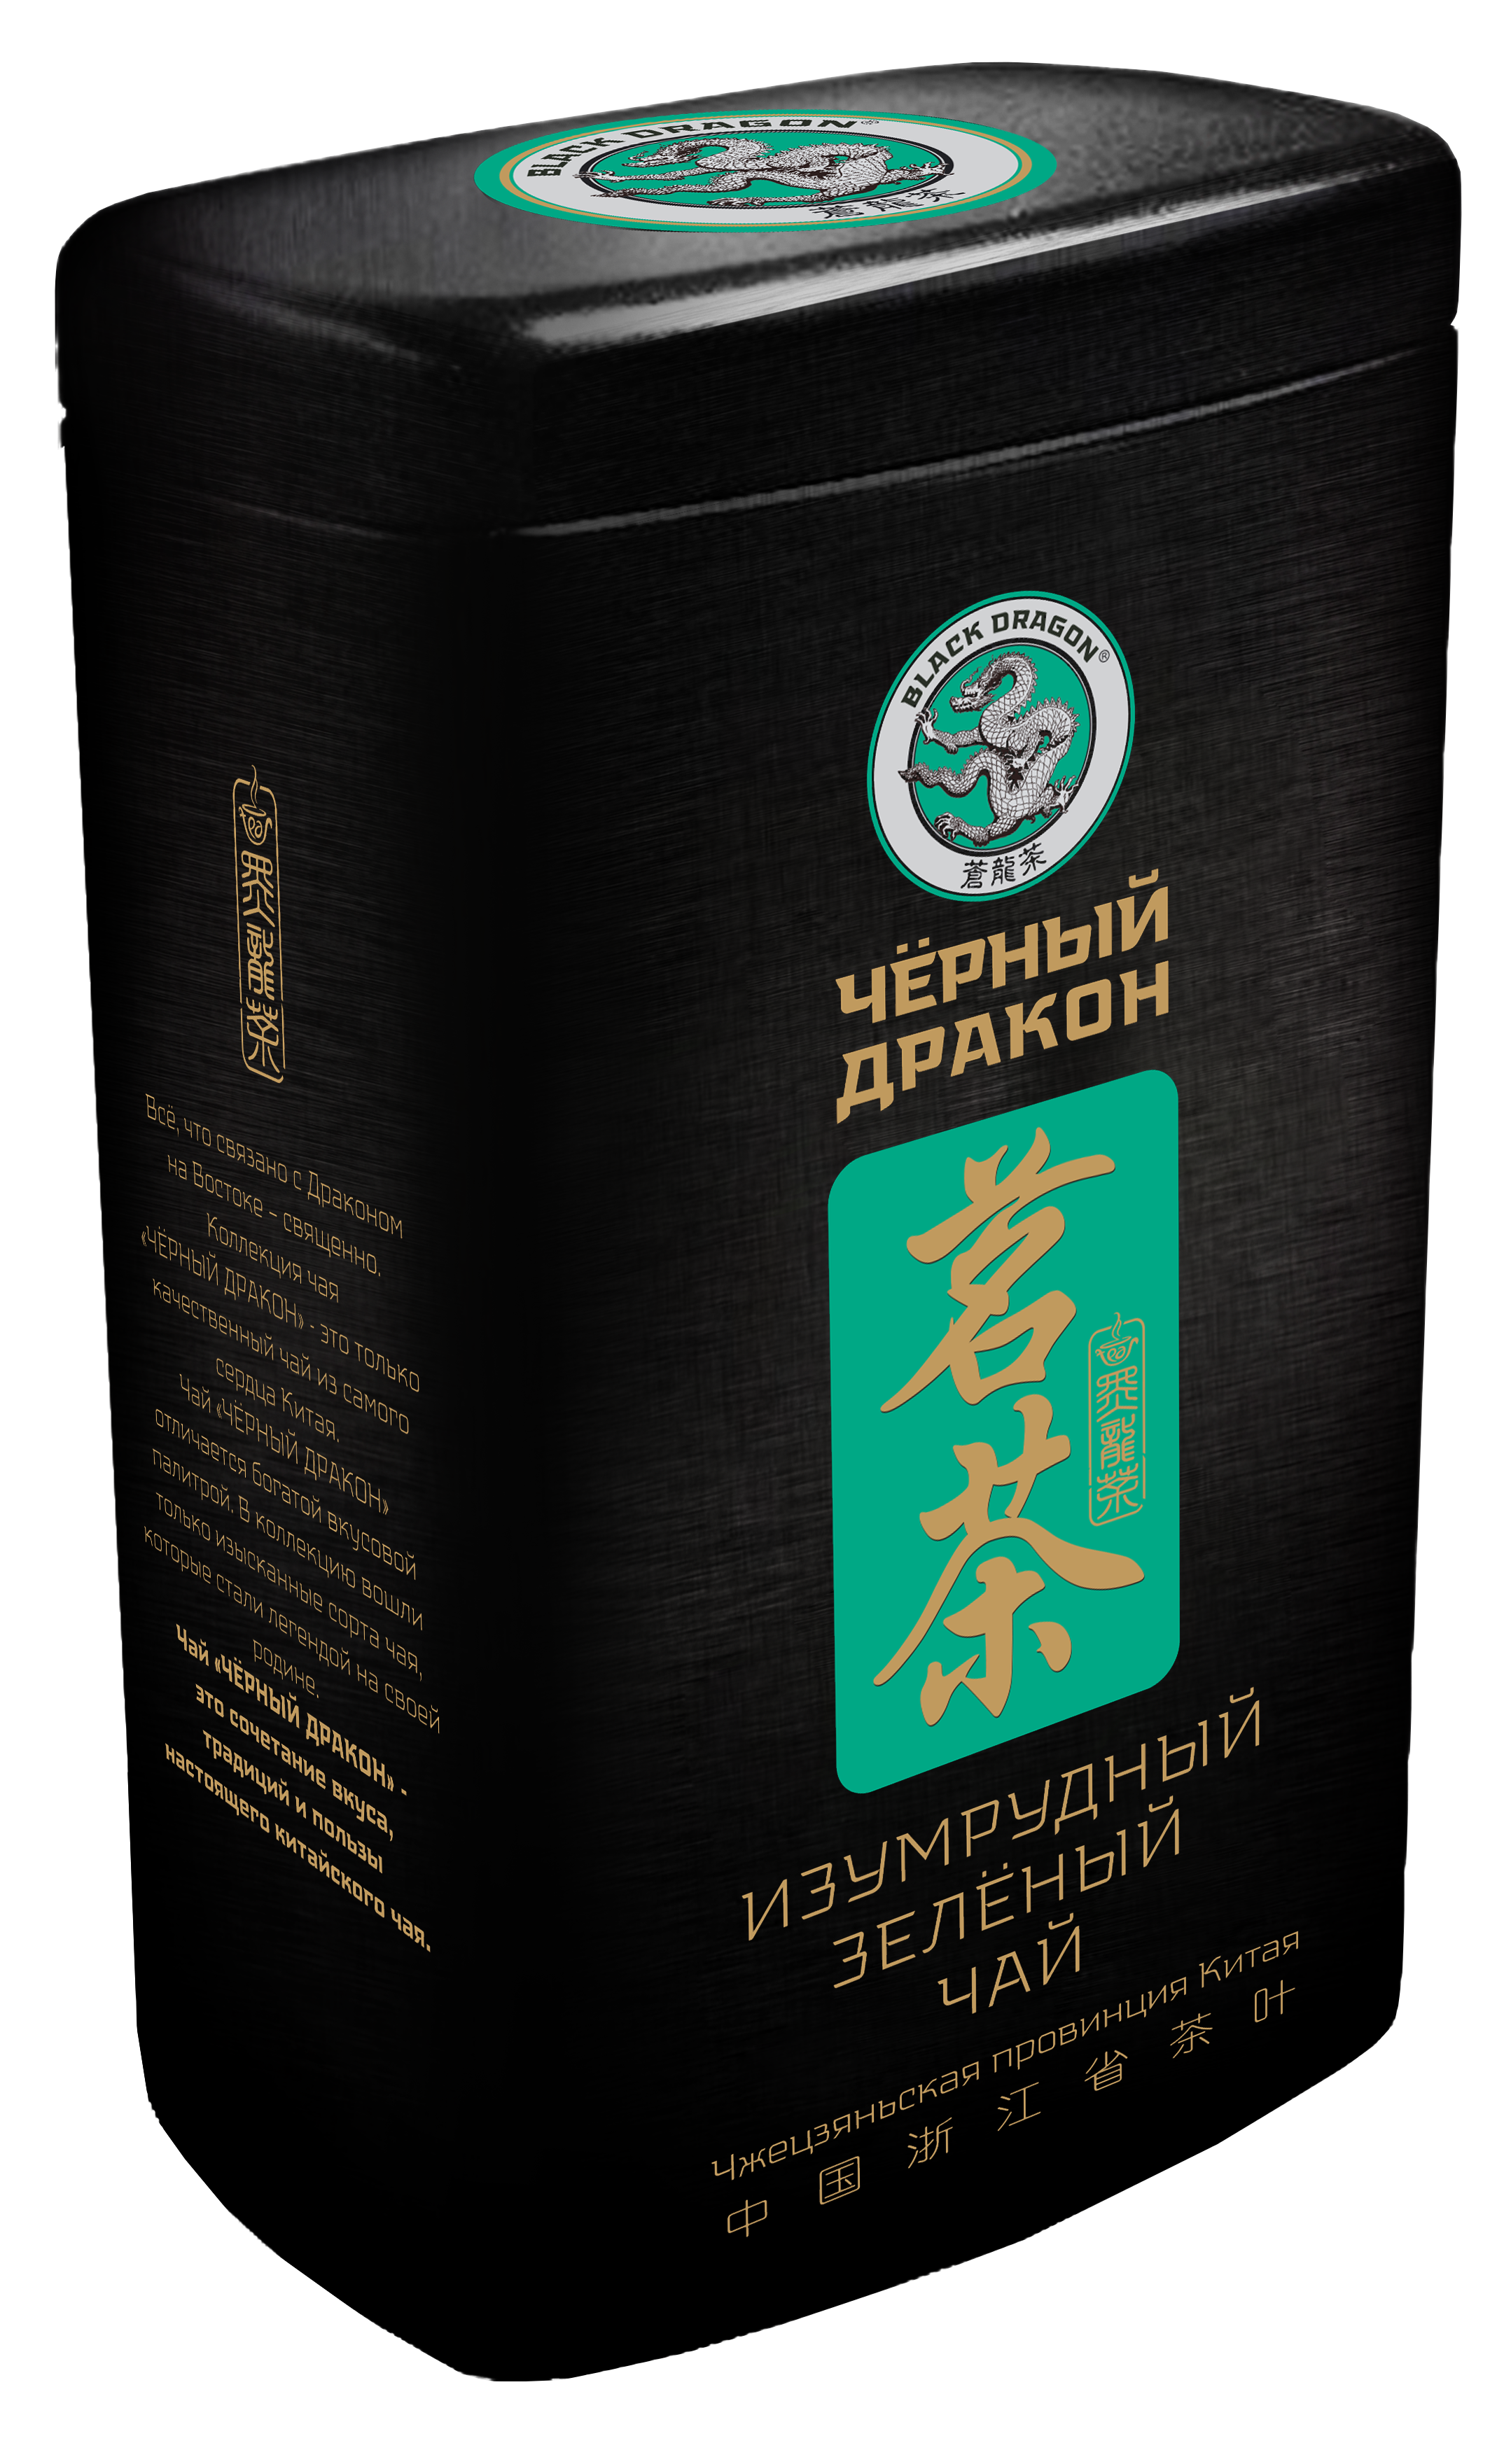 NG005-Т ЧД Изумрудный зеленый чай 100г/ж/б